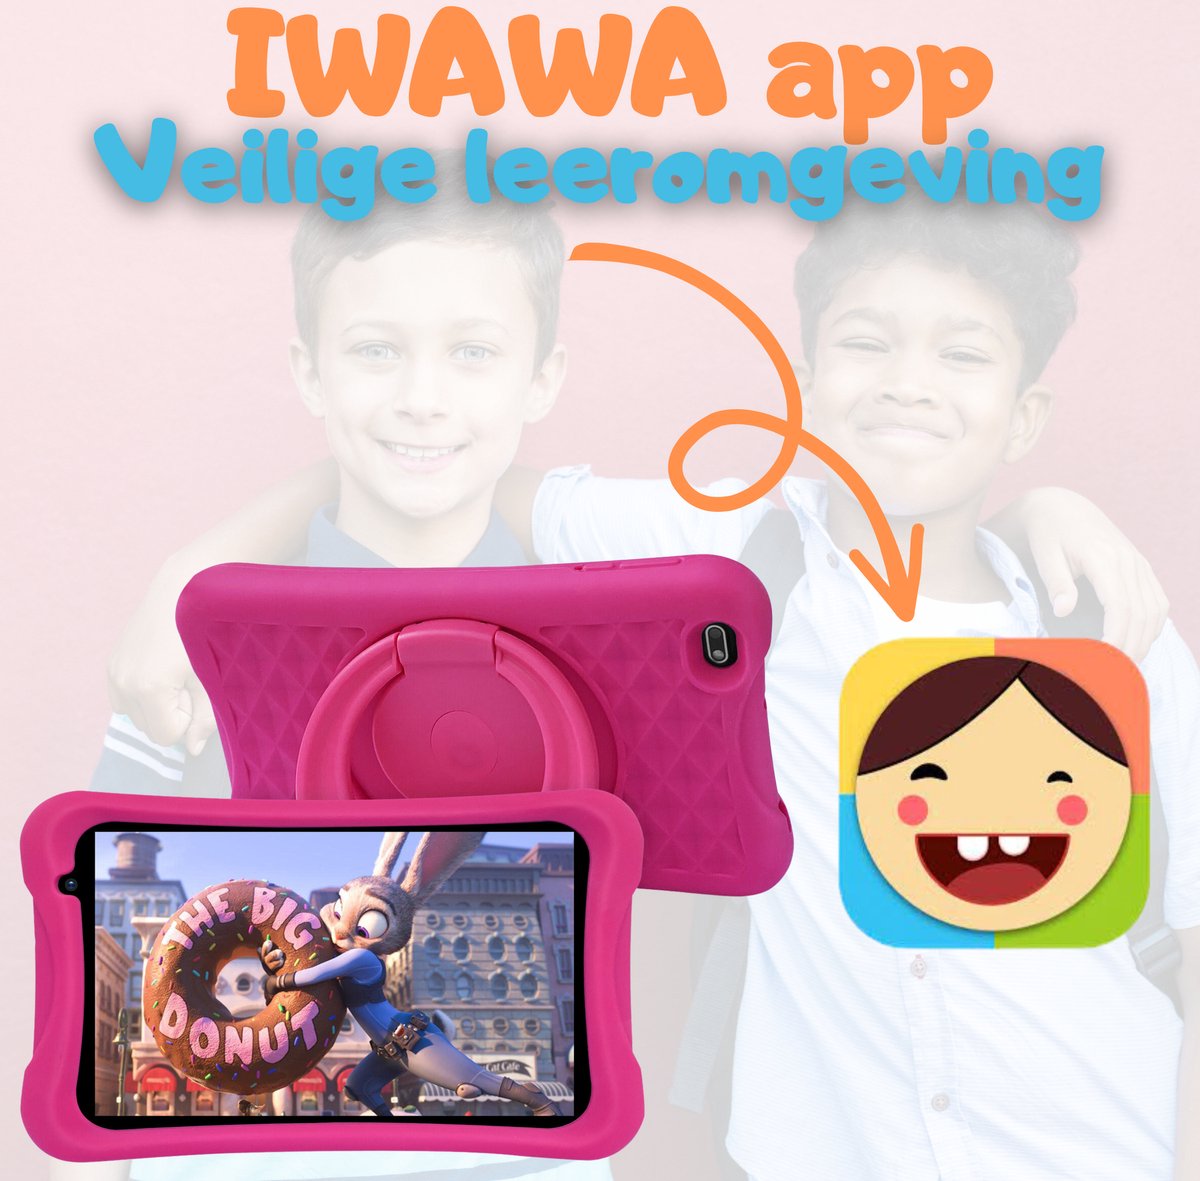 Tablette pour enfants à partir de 3 ans avec contrôle parental - 100%  Kidsproof - 8